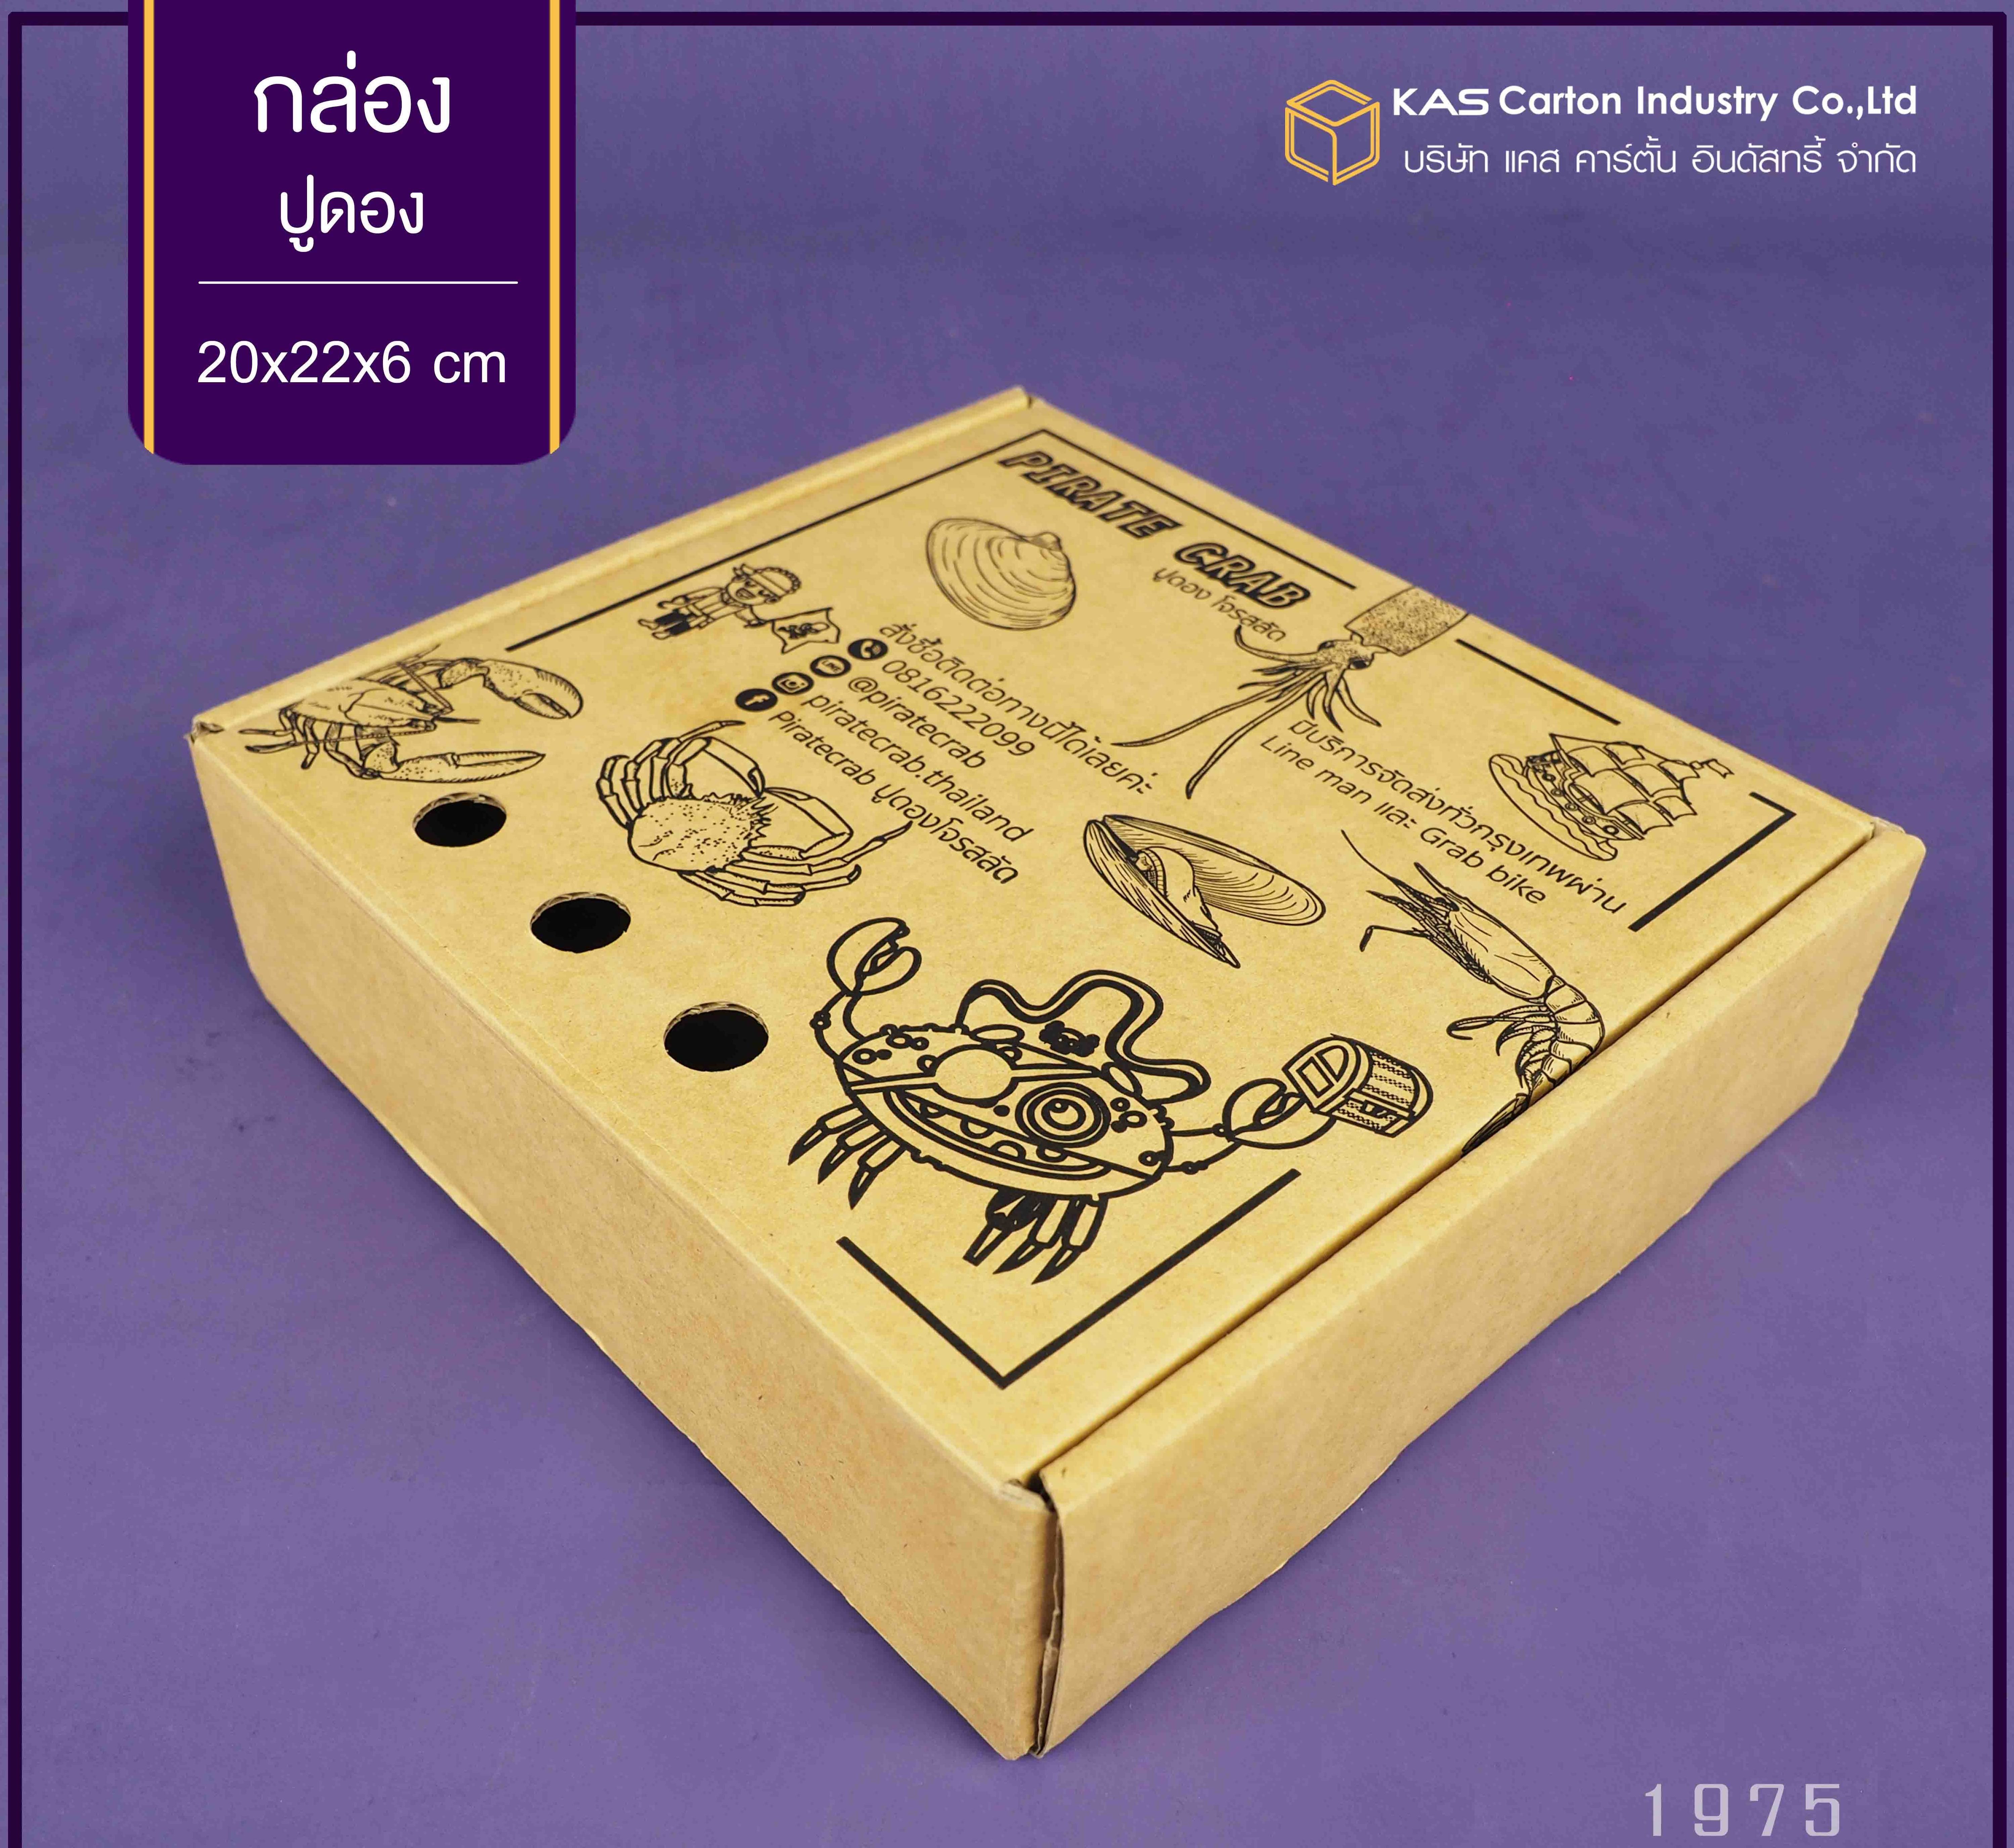 กล่องลูกฟูก สำเร็จรูป และ สั่งผลิต ตามความต้องการลูกค้า กล่องลูกฟูก SME กล่องกระดาษลูกฟูก กล่องอาหาร ปูดอง  Brand Pirates Crab